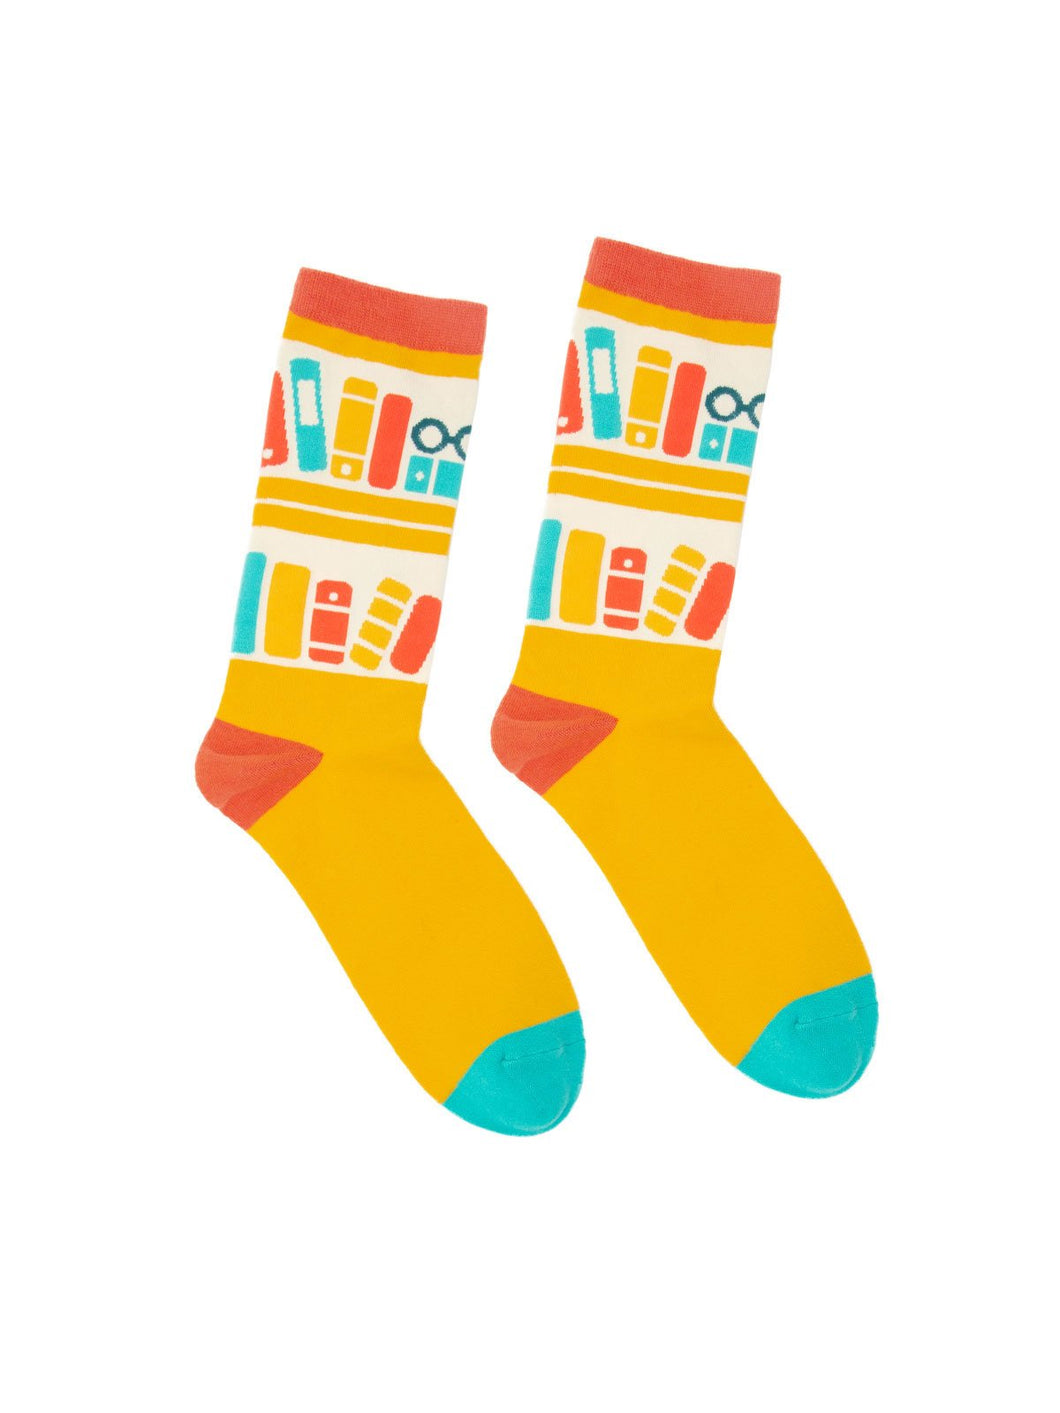 Bookshelf socks (Adult)